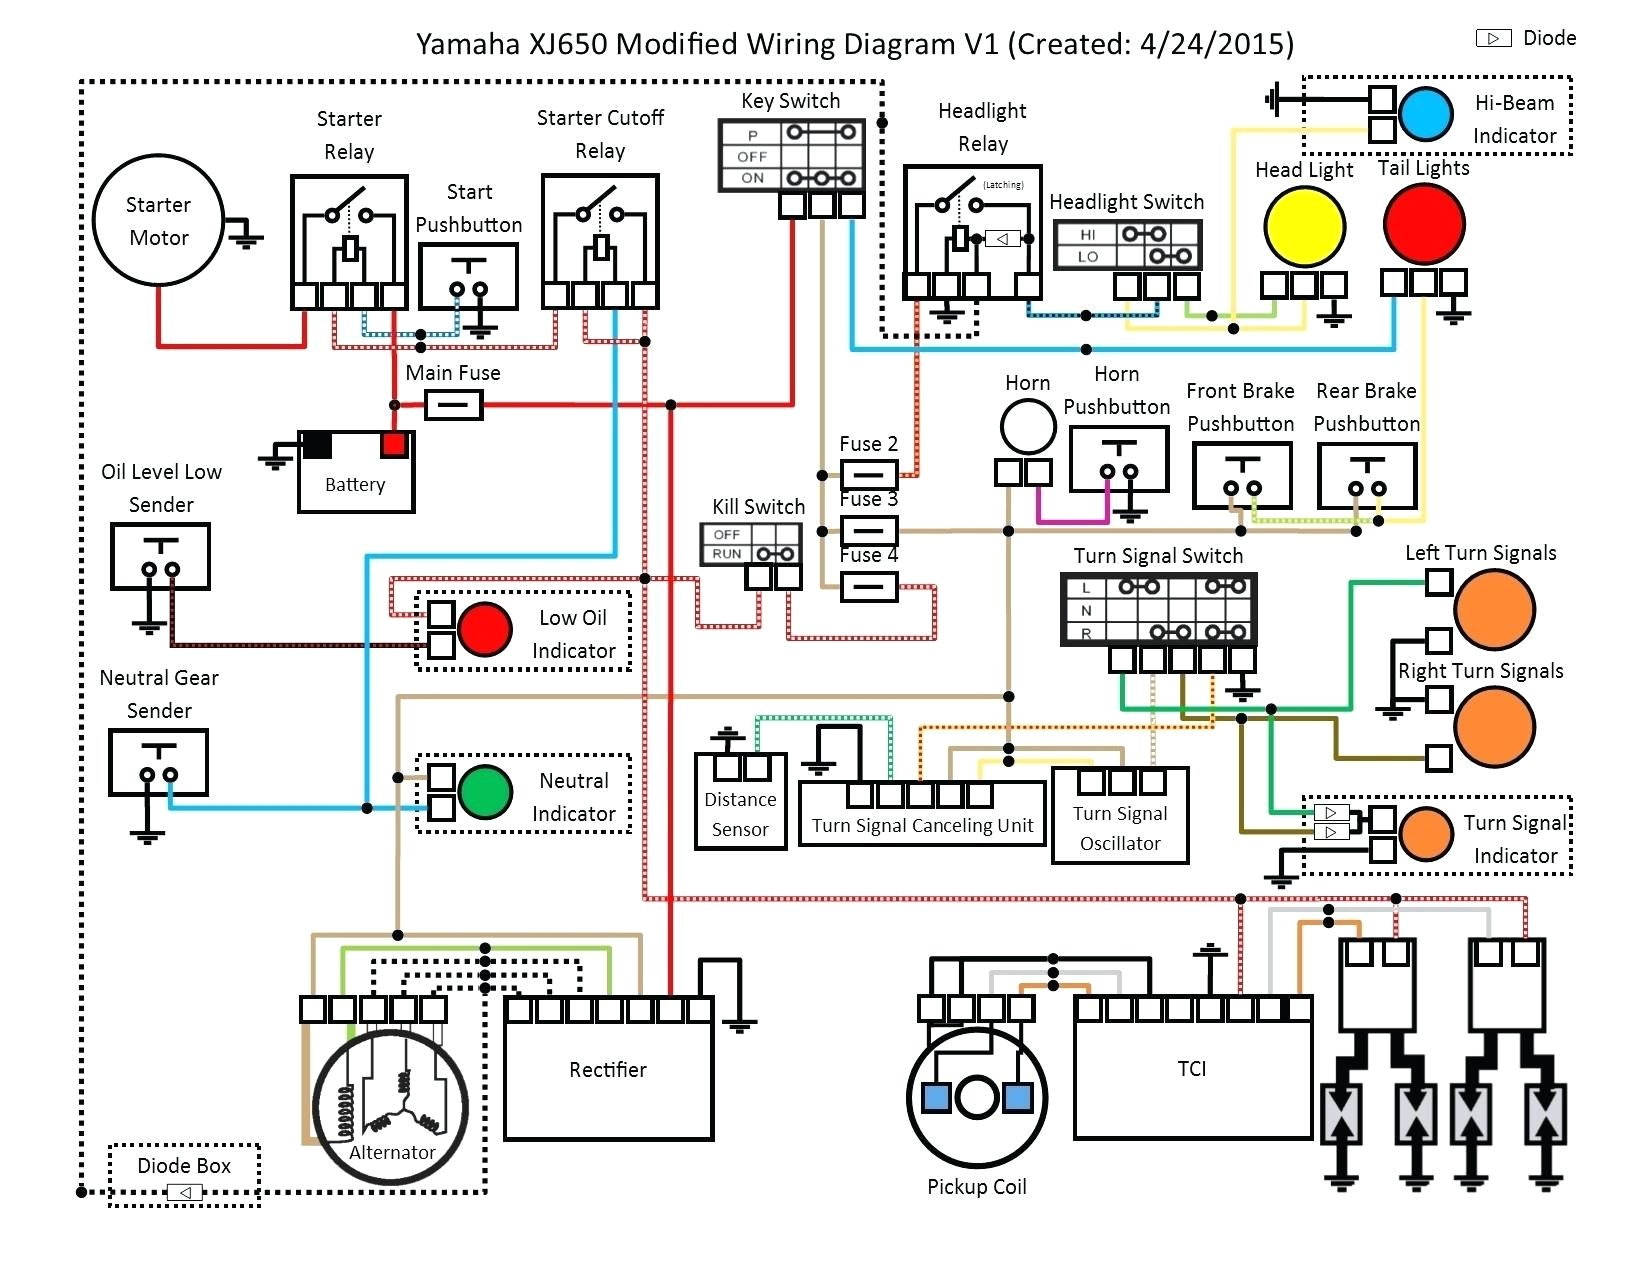 honda xrm 125 electrical wiring diagram lukaszmira com at gg honda xrm 110 electrical wiring diagram